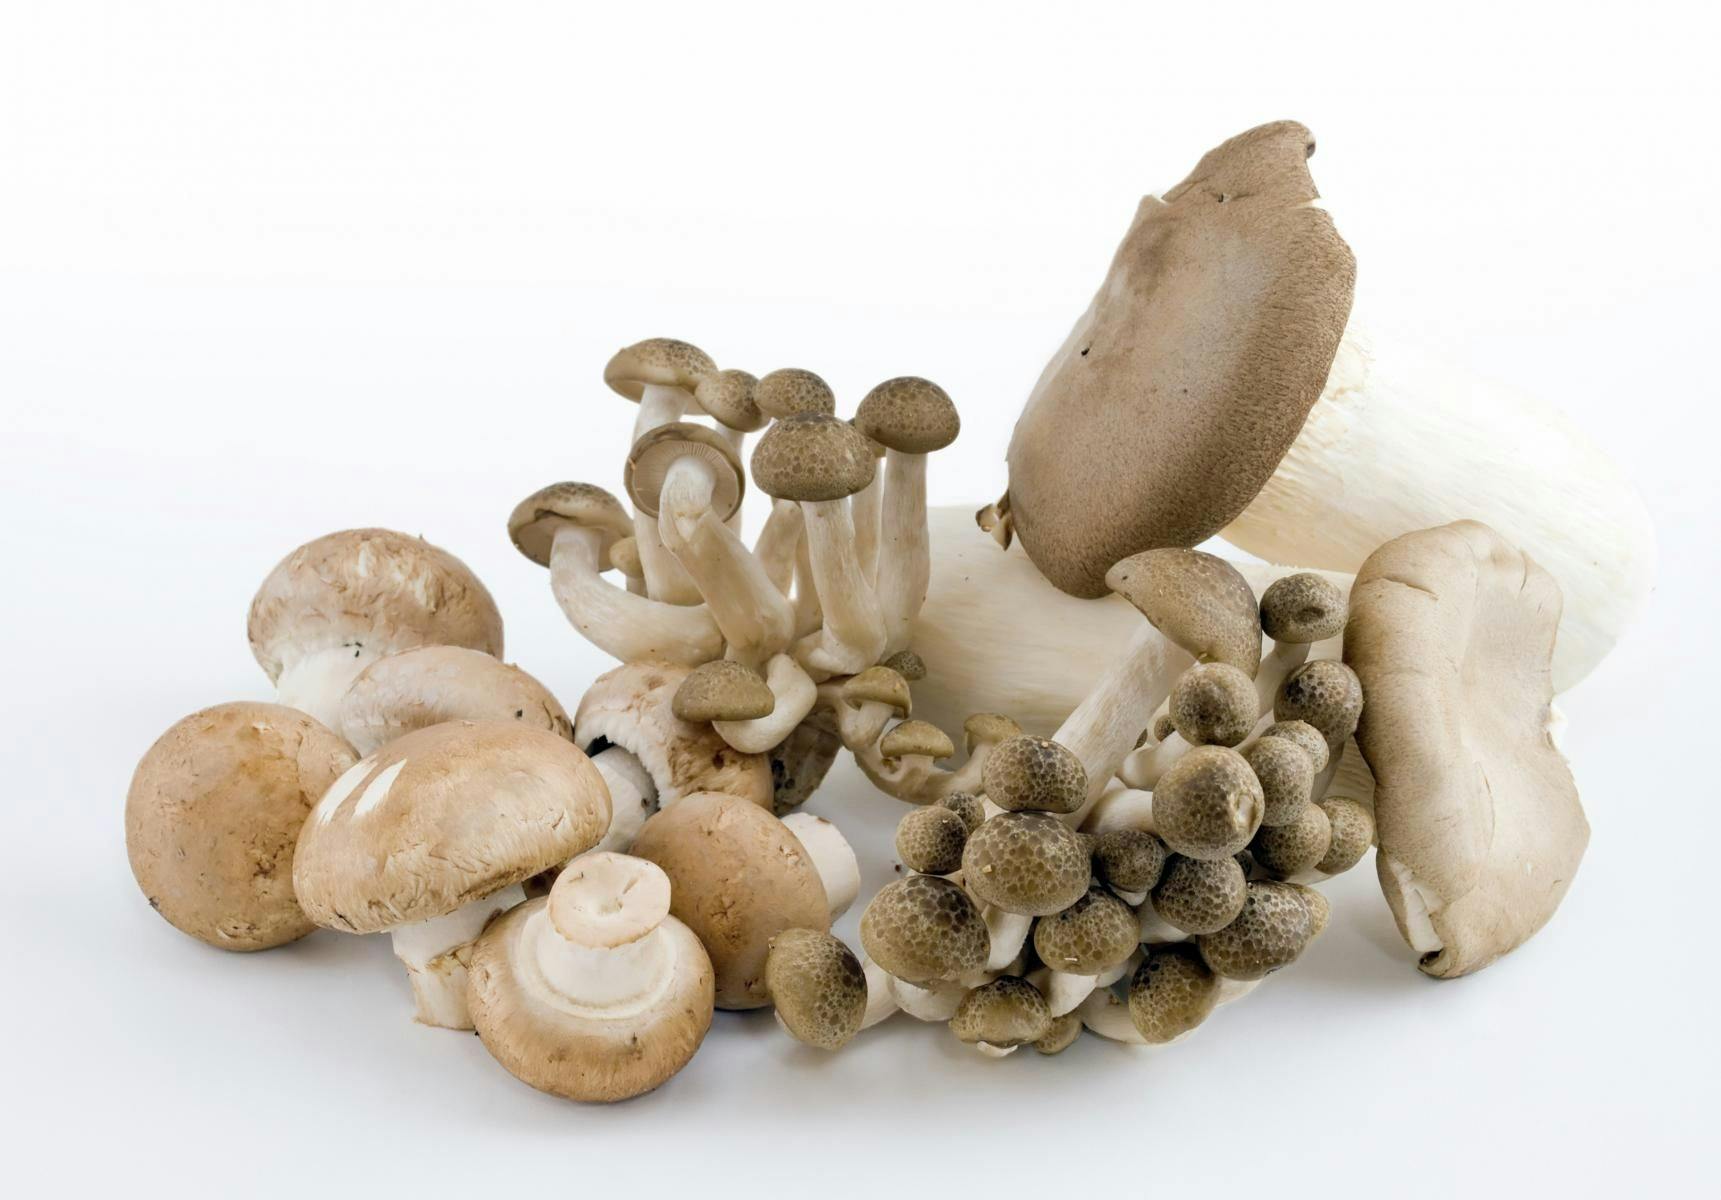 Oyster Mushrooms Make Vitamin D